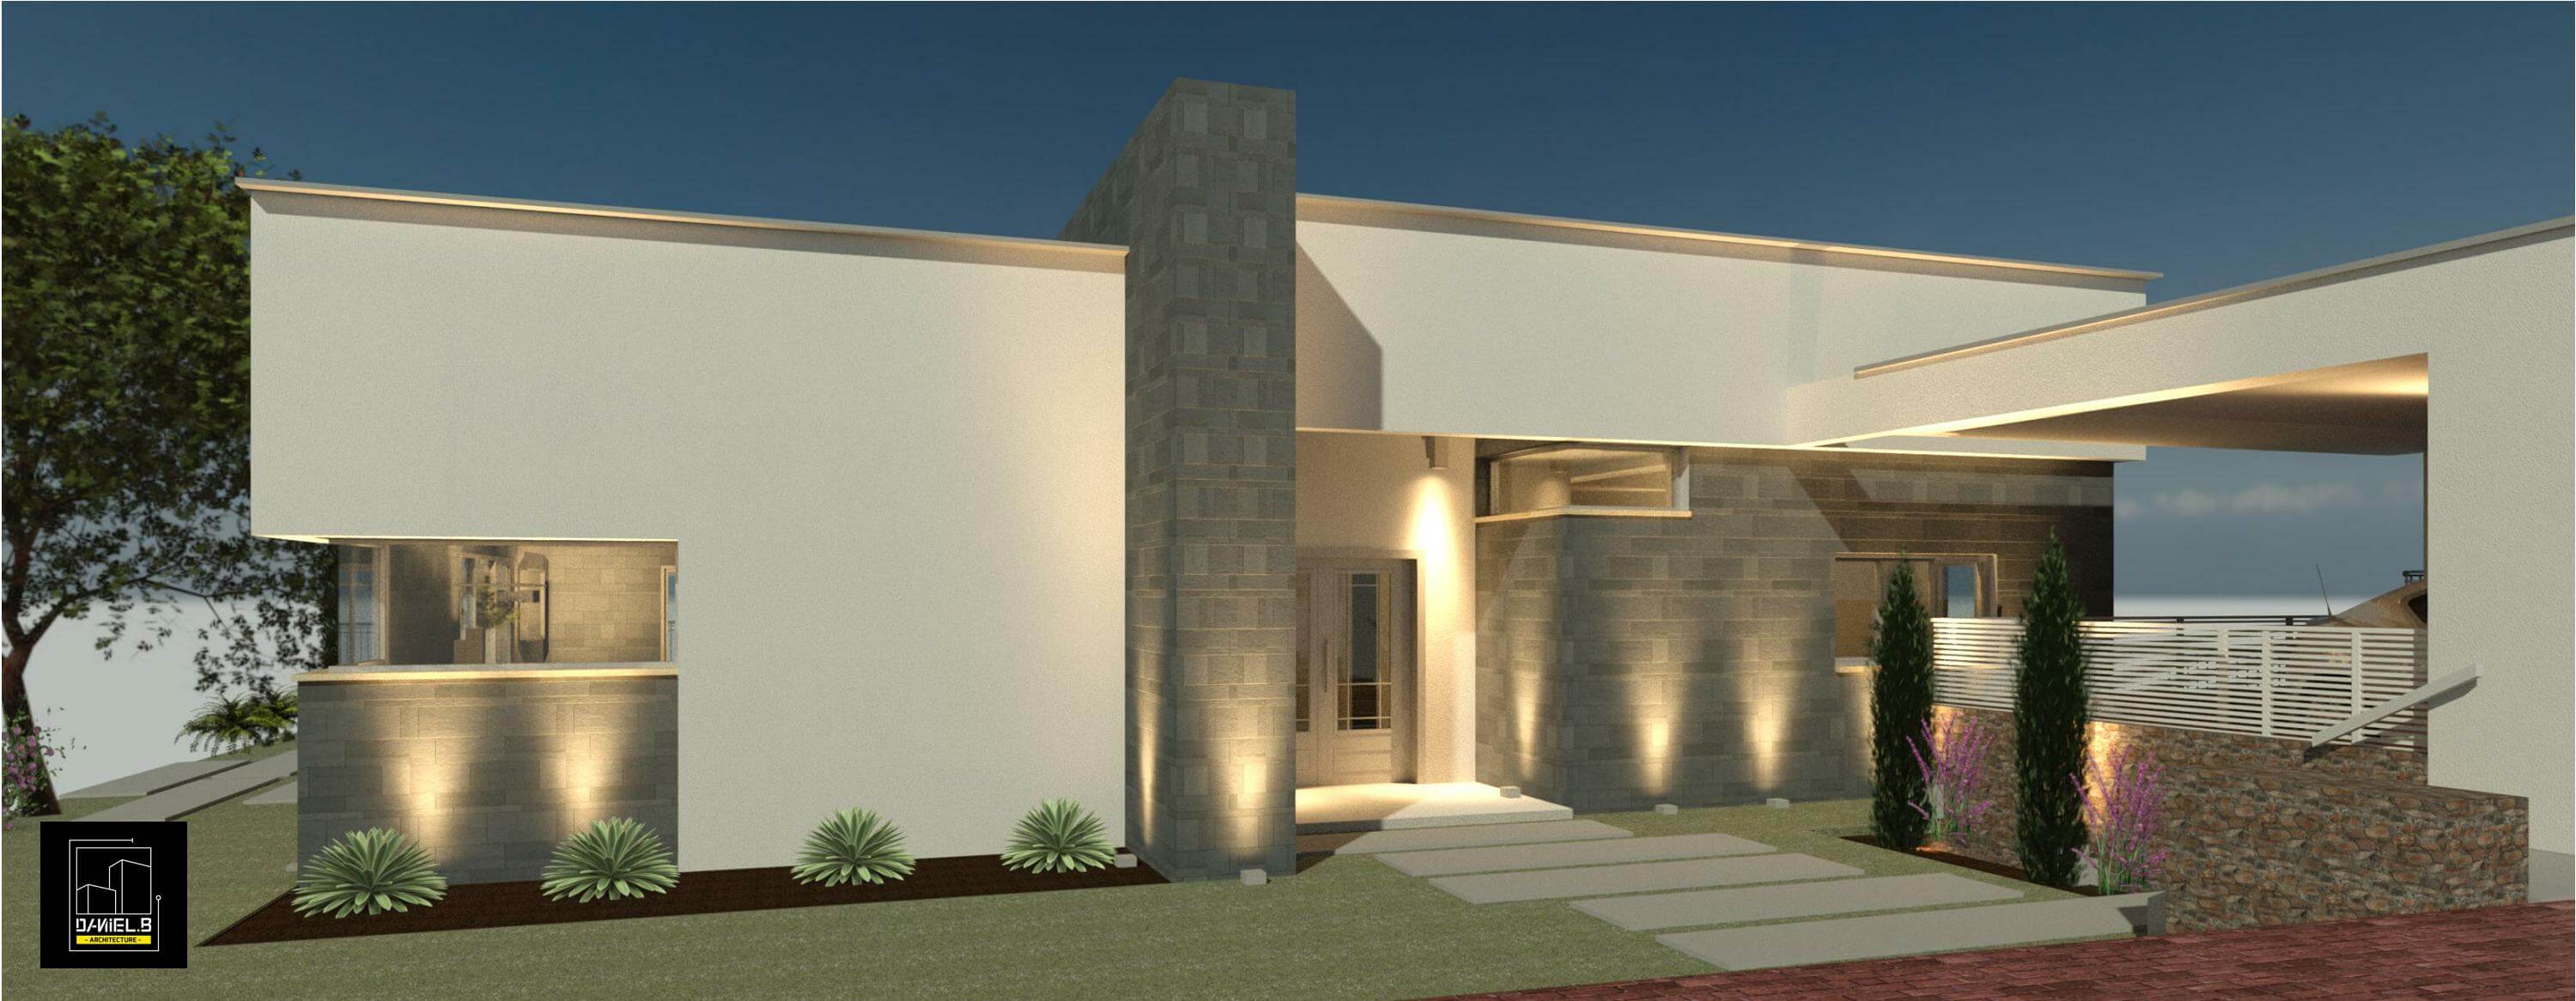 תמונת פרויקט בית בעיצוב מודרני בדרום הגולן